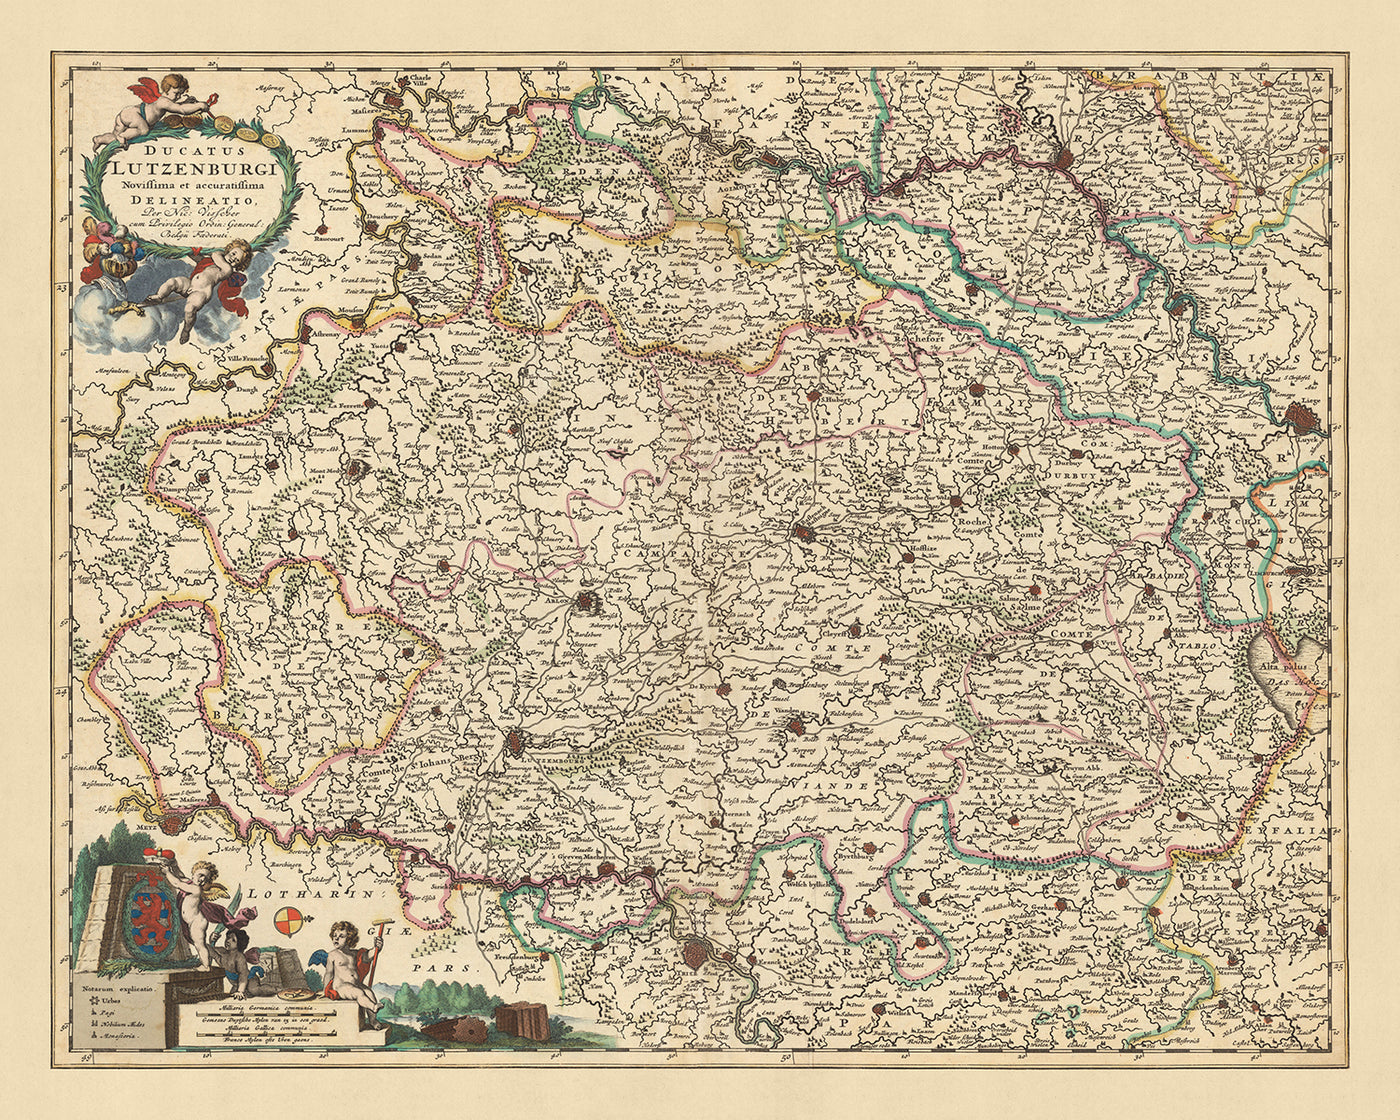 Alte Karte des Herzogtums Luxemburg von Visscher, 1690: Lüttich, Namur, Metz, Trier, Regionalpark Ardennen